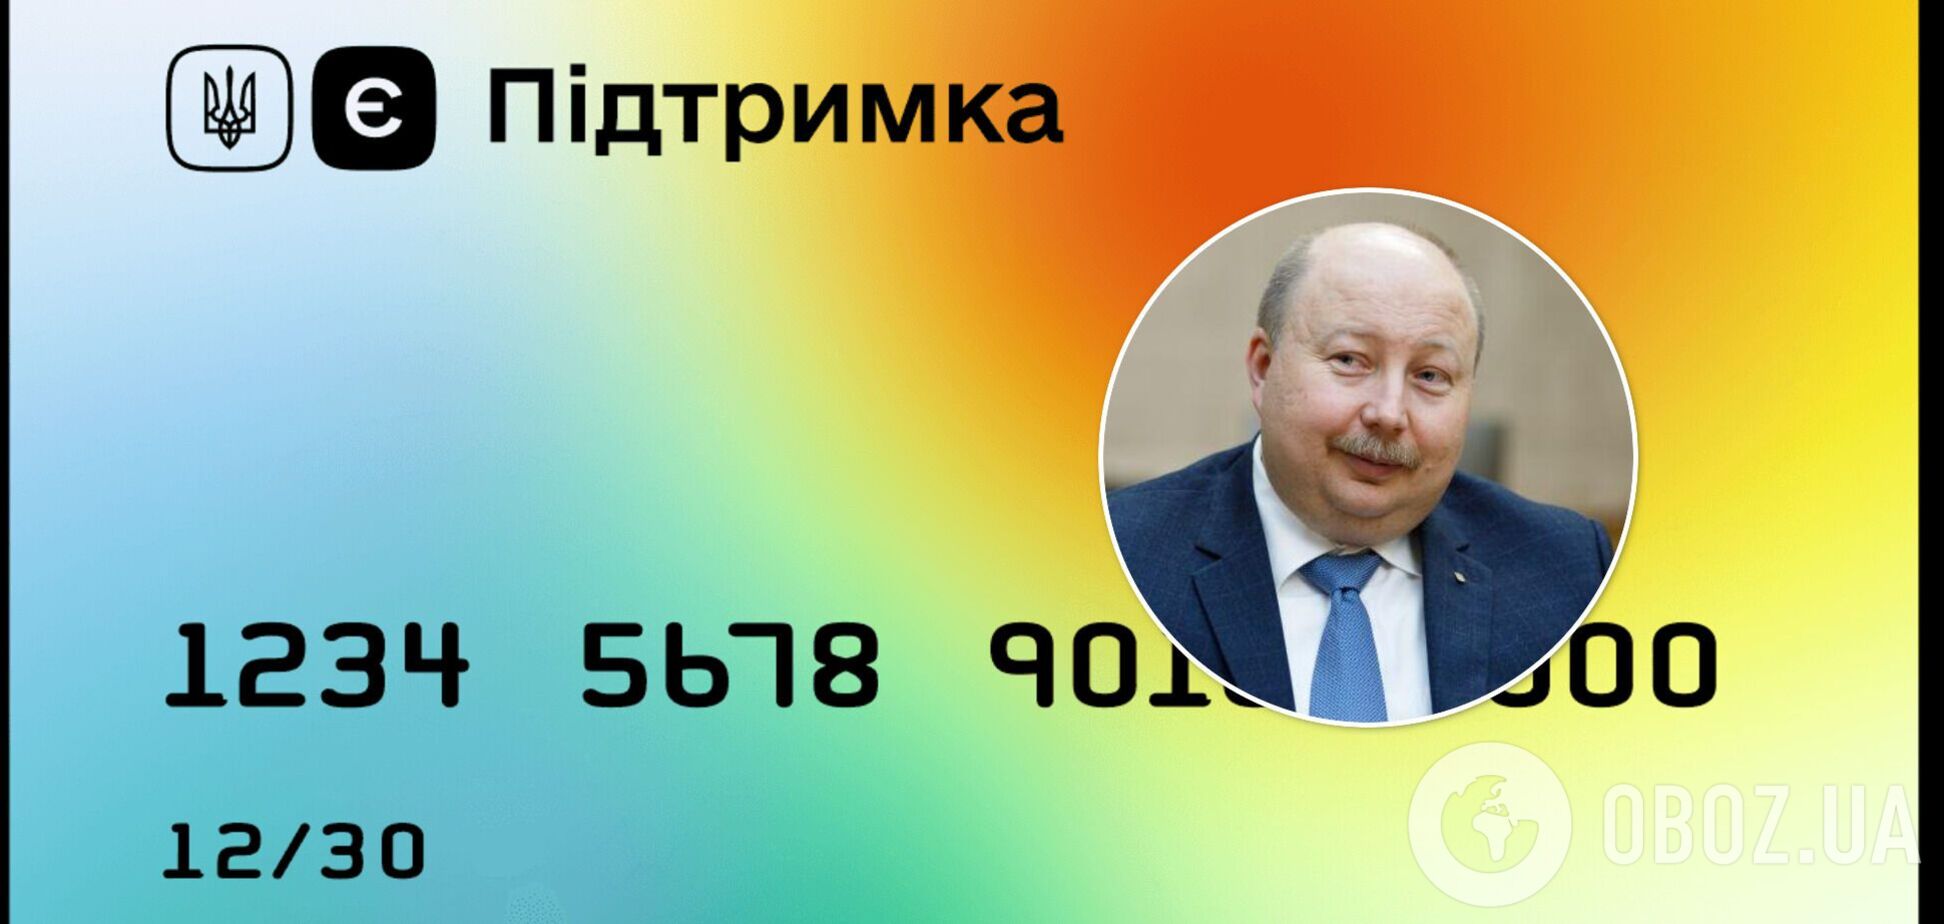 Урядовці не оформляють картку єПідтримка, – Немчінов